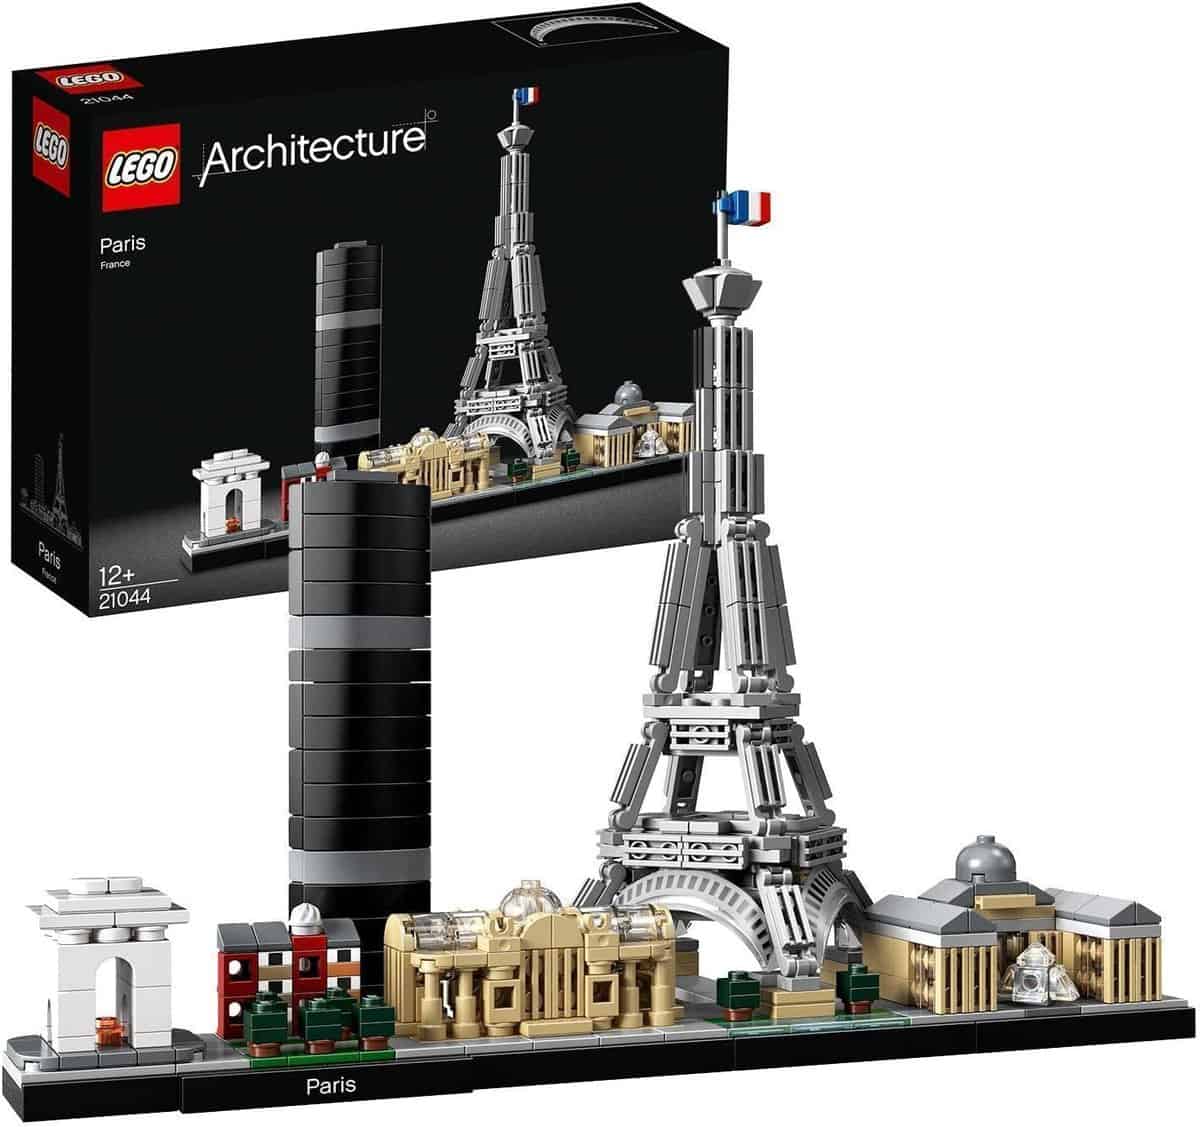 LEGO Architecture - Paris (21044) - für 29,99 € inkl. Versand statt 37,68 €